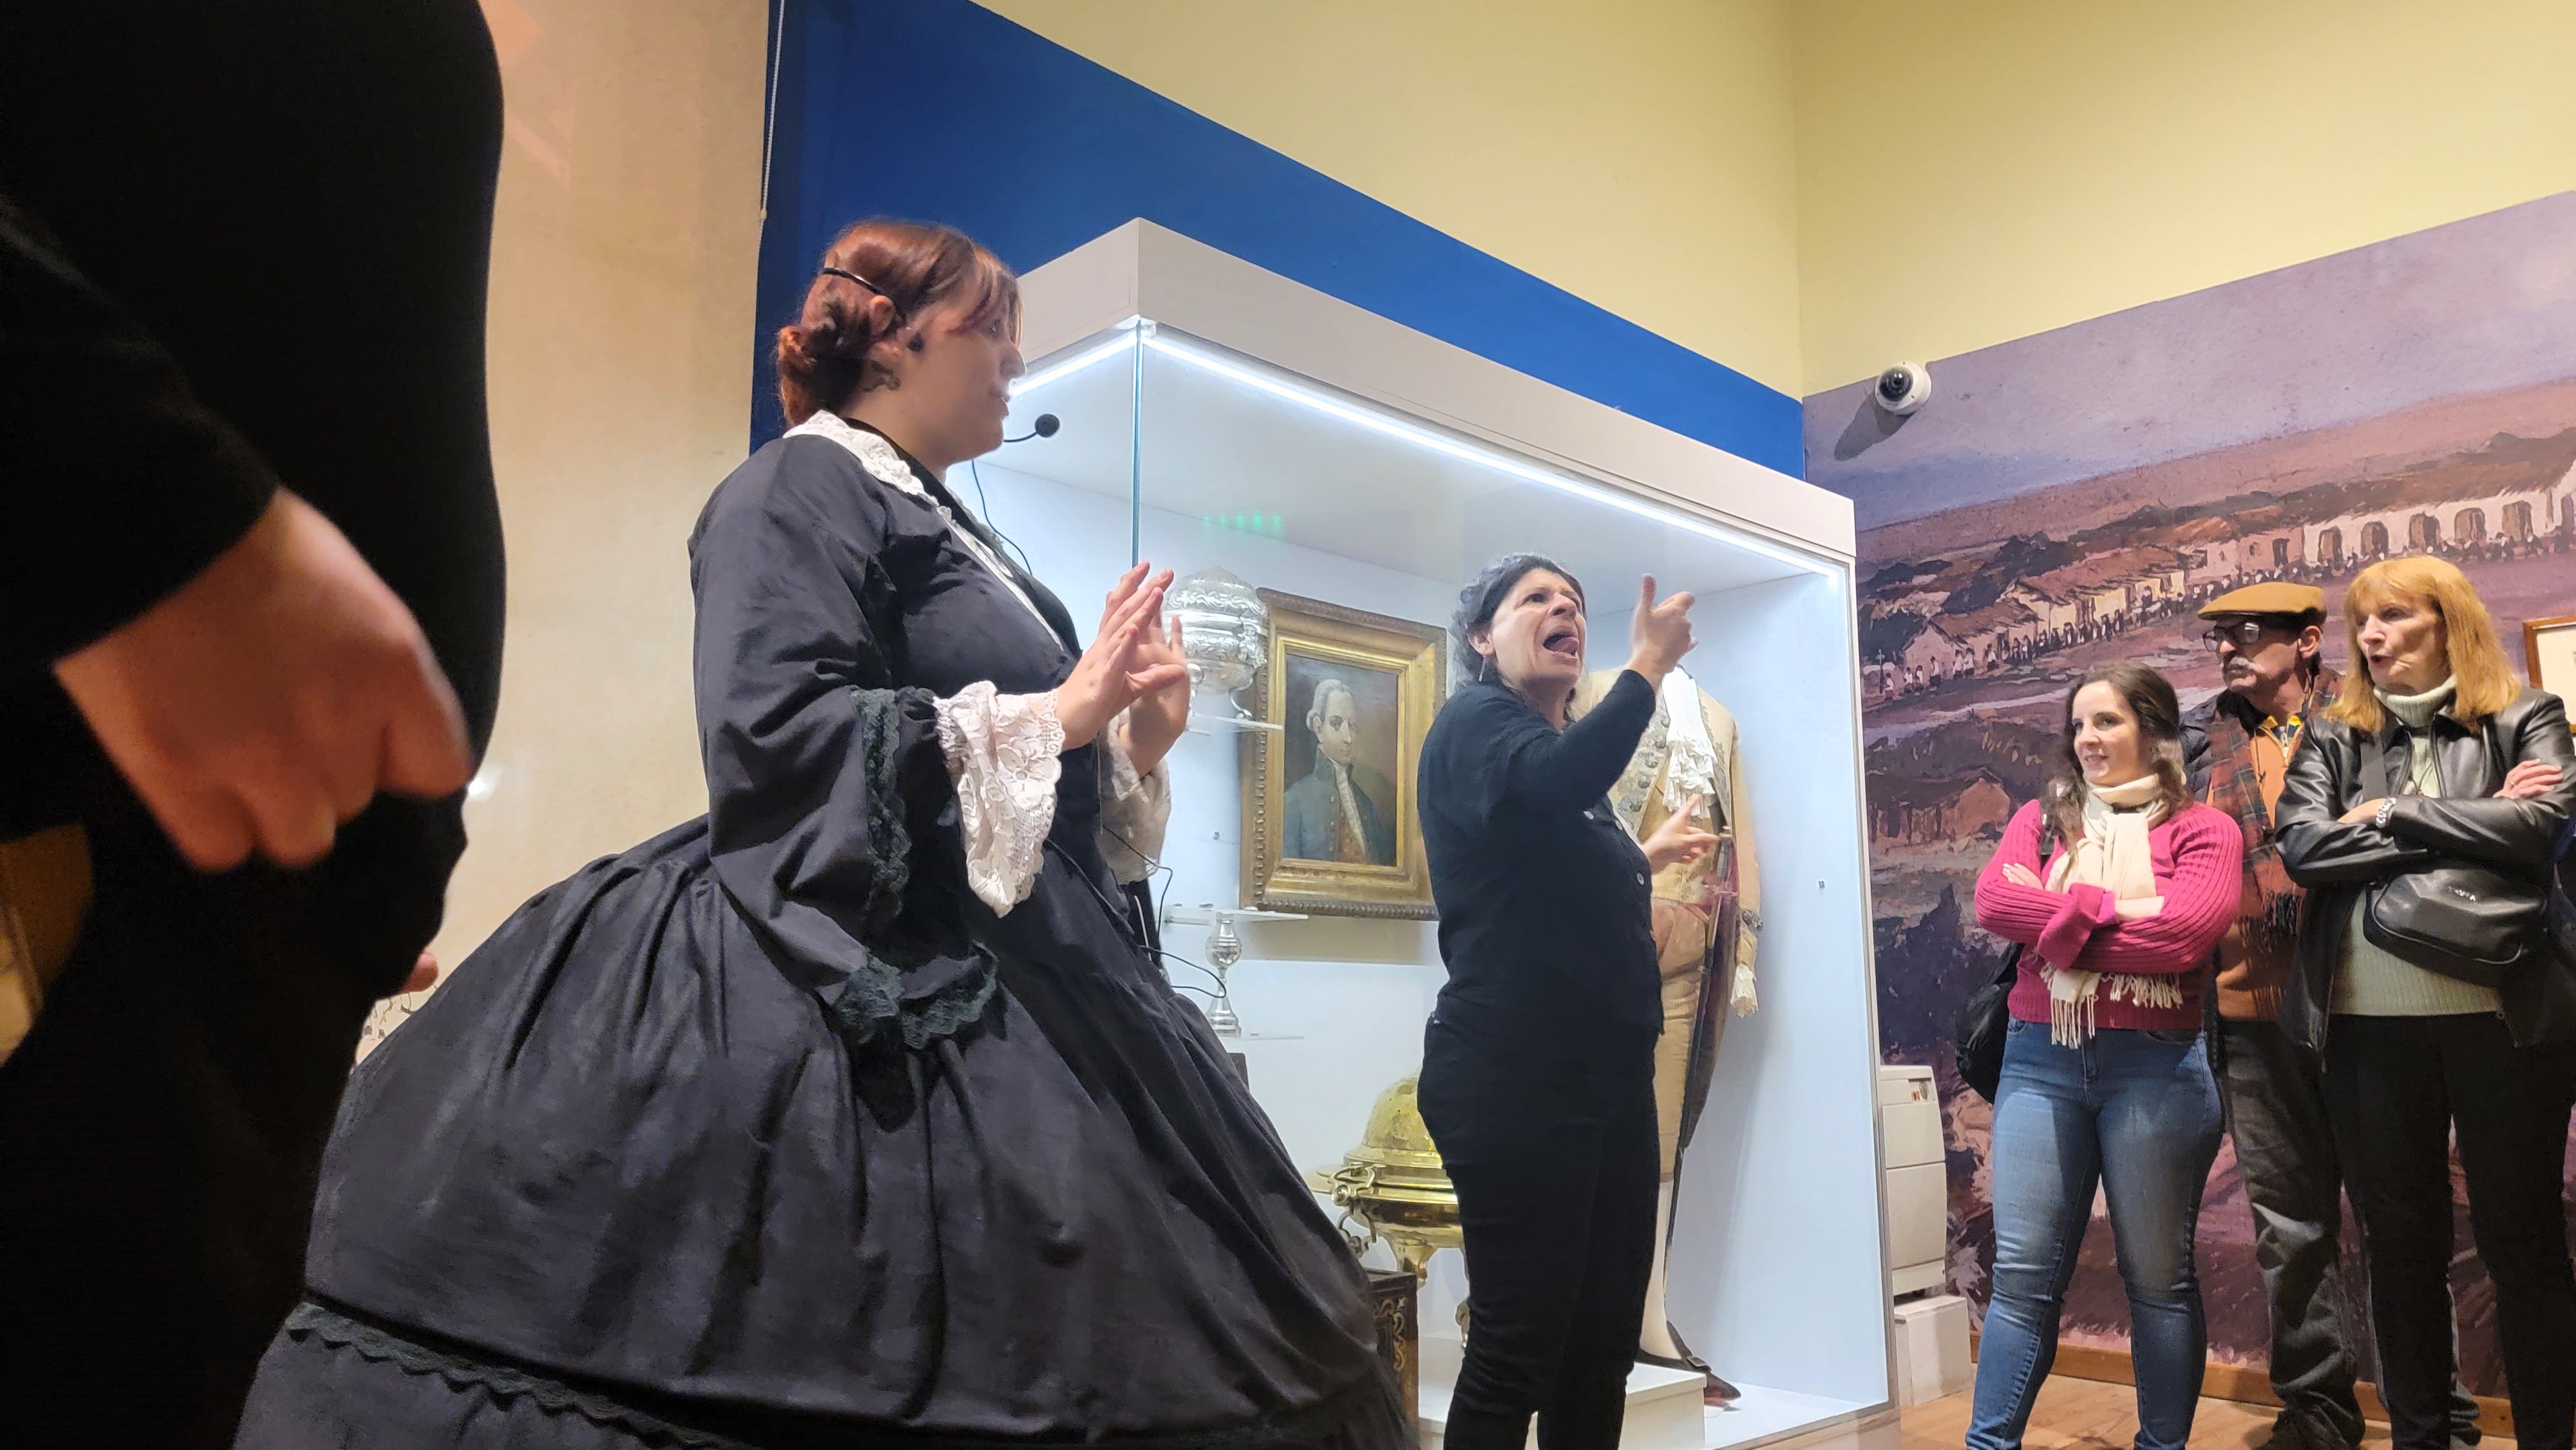 Fotografia en la que se observa en primer plano a la guia del museo vestida con traje del siglo 19 y a su izquierda interprete 